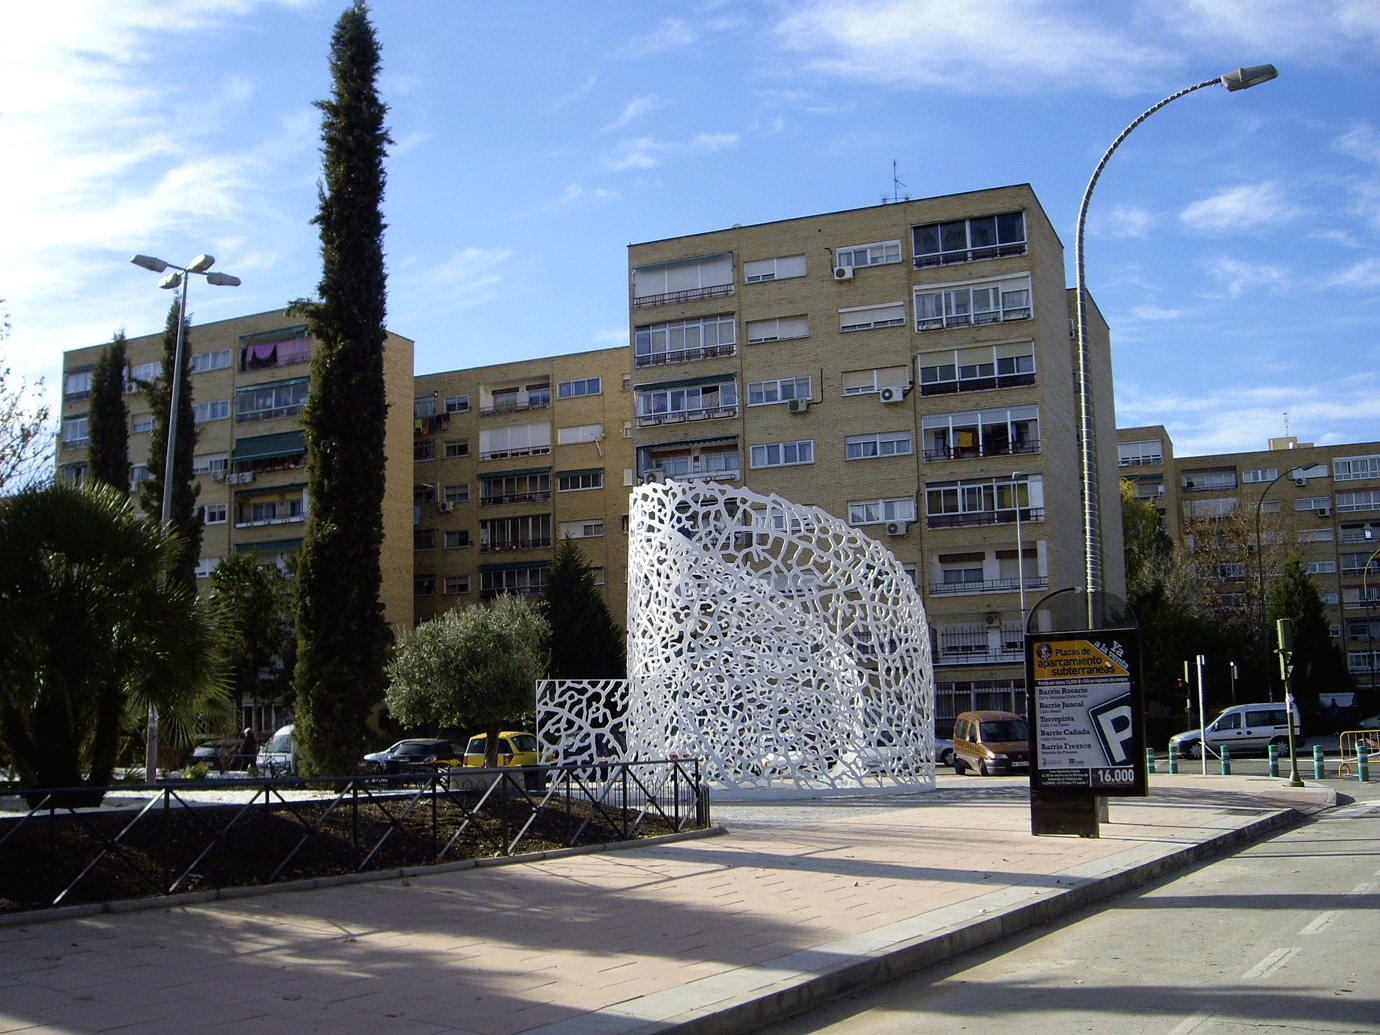 LA ROSA, Torrejón de Ardoz, Spain. Juanjo Novella